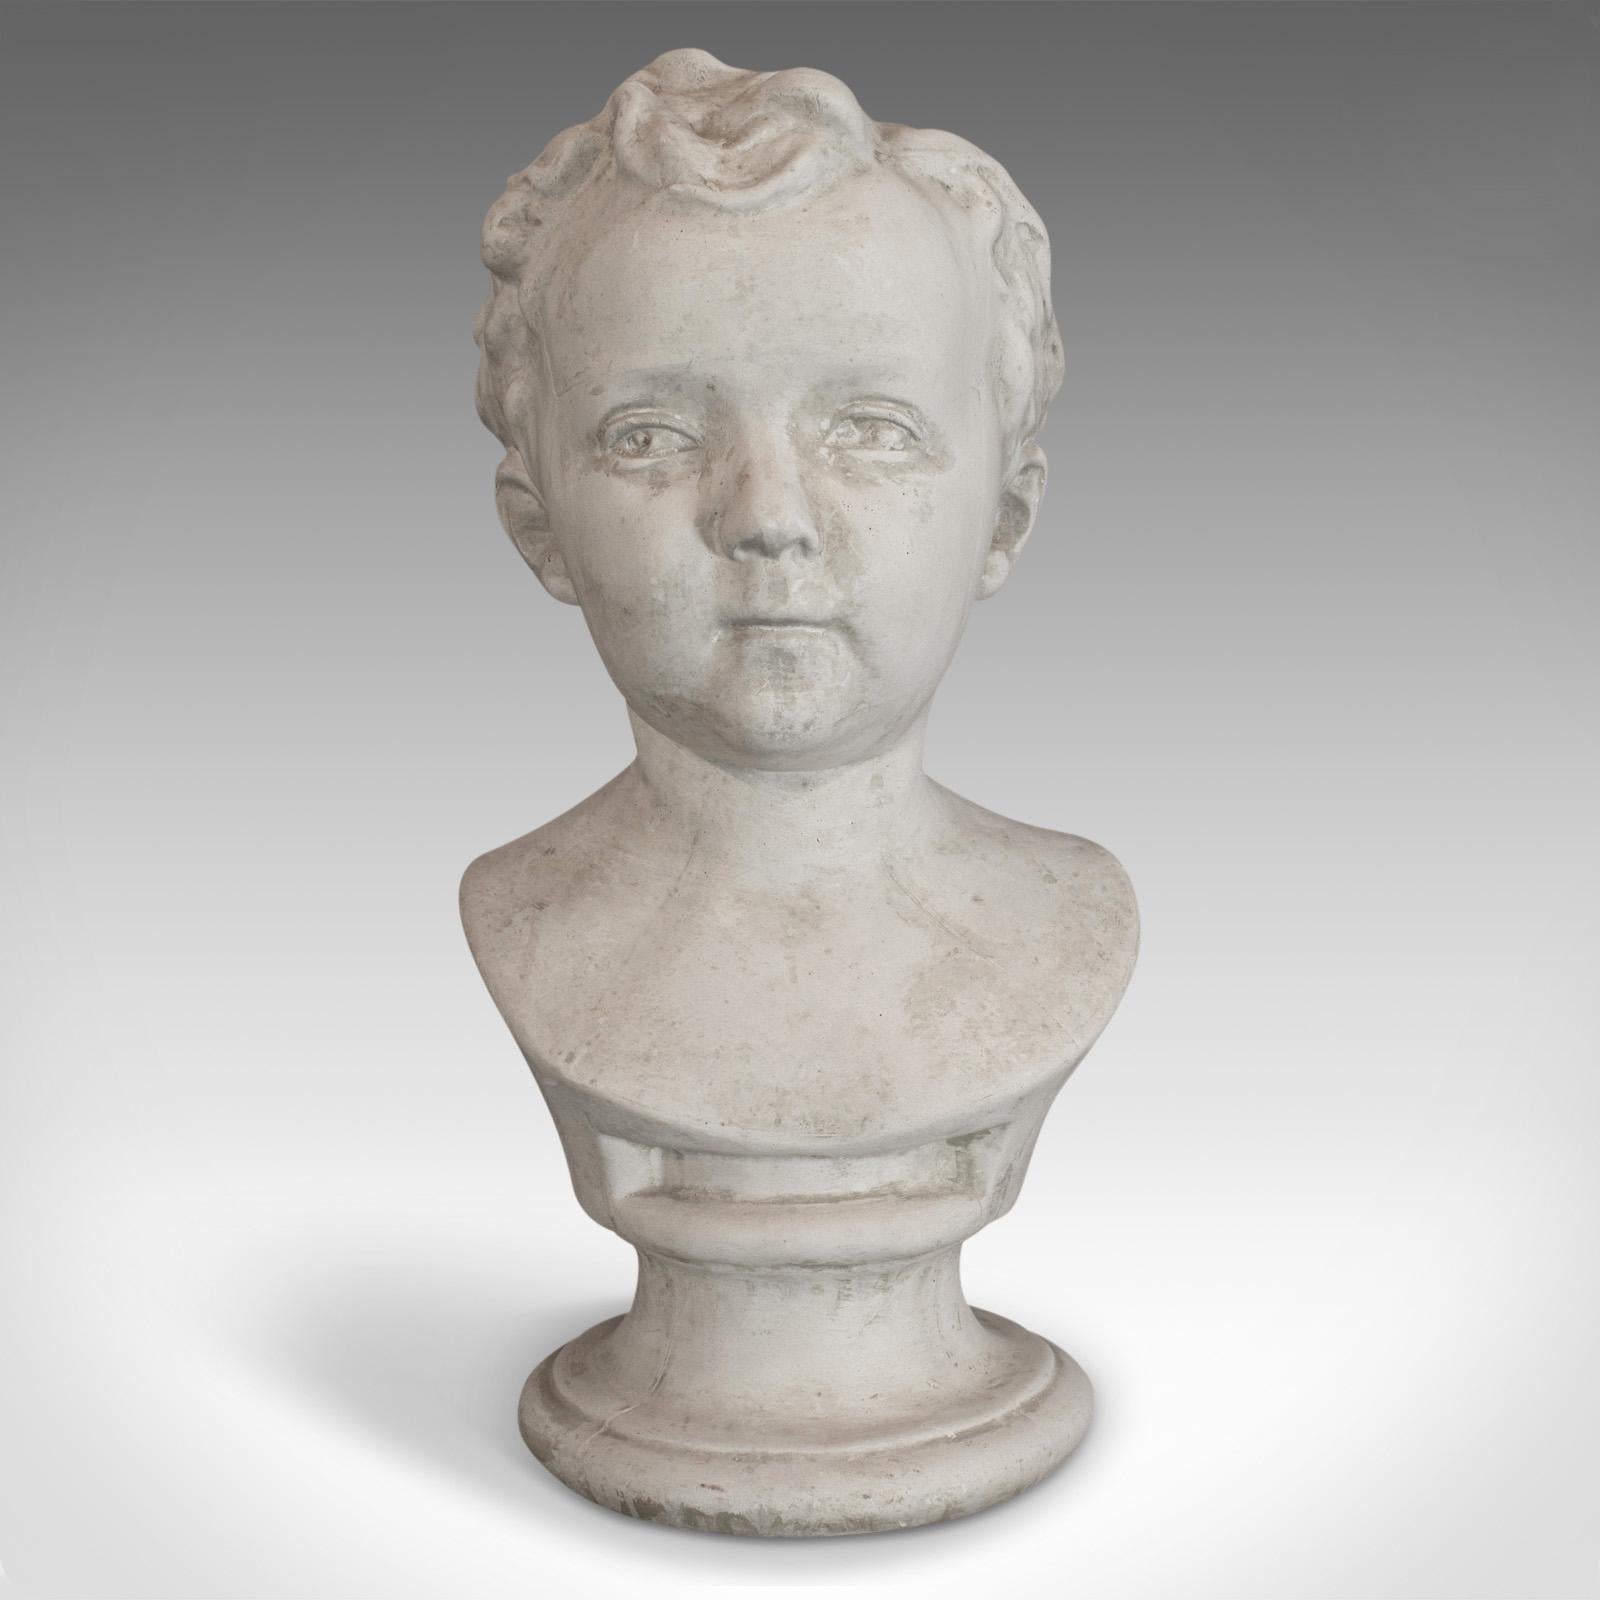 Il s'agit d'un buste d'enfant vintage. Une étude anglaise en plâtre d'un jeune garçon, datant de la fin du 20e siècle.

Plein de caractère et de charme.
Présente une patine d'ancienneté souhaitable.
Le regard impavide capture l'essence d'un